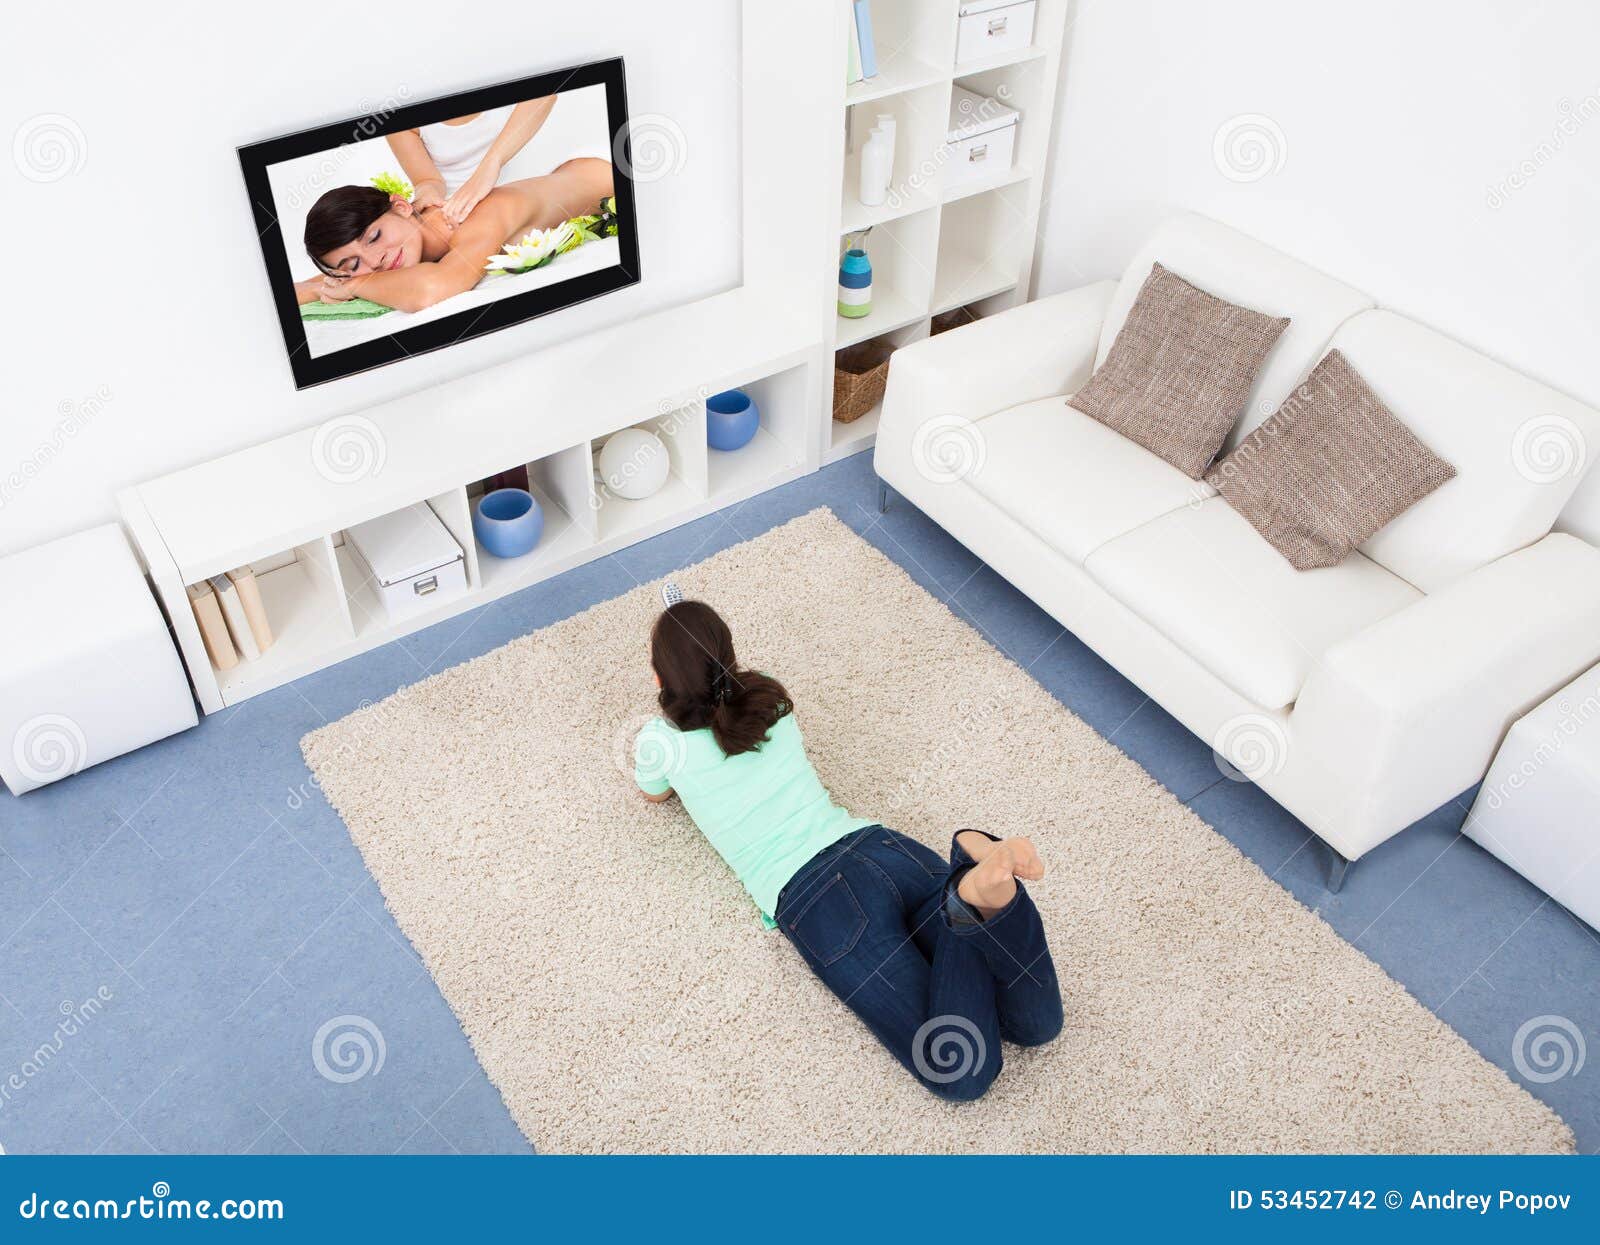 Читать лежа вредно лежа на горячем песке. Валяется под телевизором. Женщина смотрит телевизор лежа. Лежа у телевизора картинки. Телевизор лежит на полу.